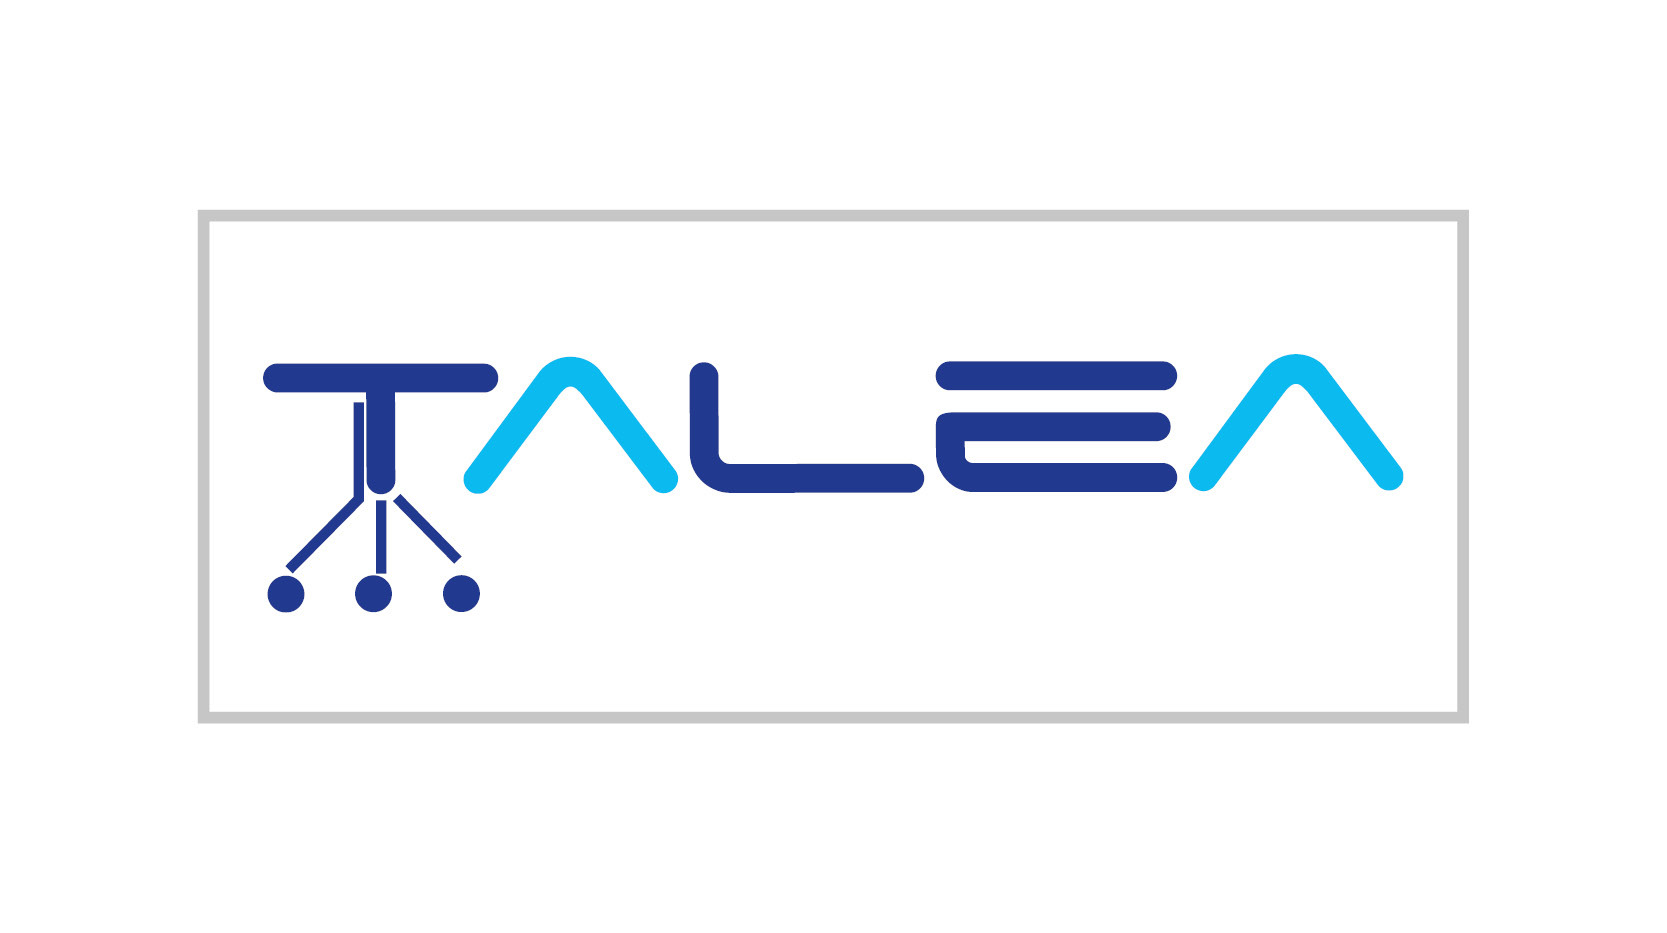 TALEA-logo